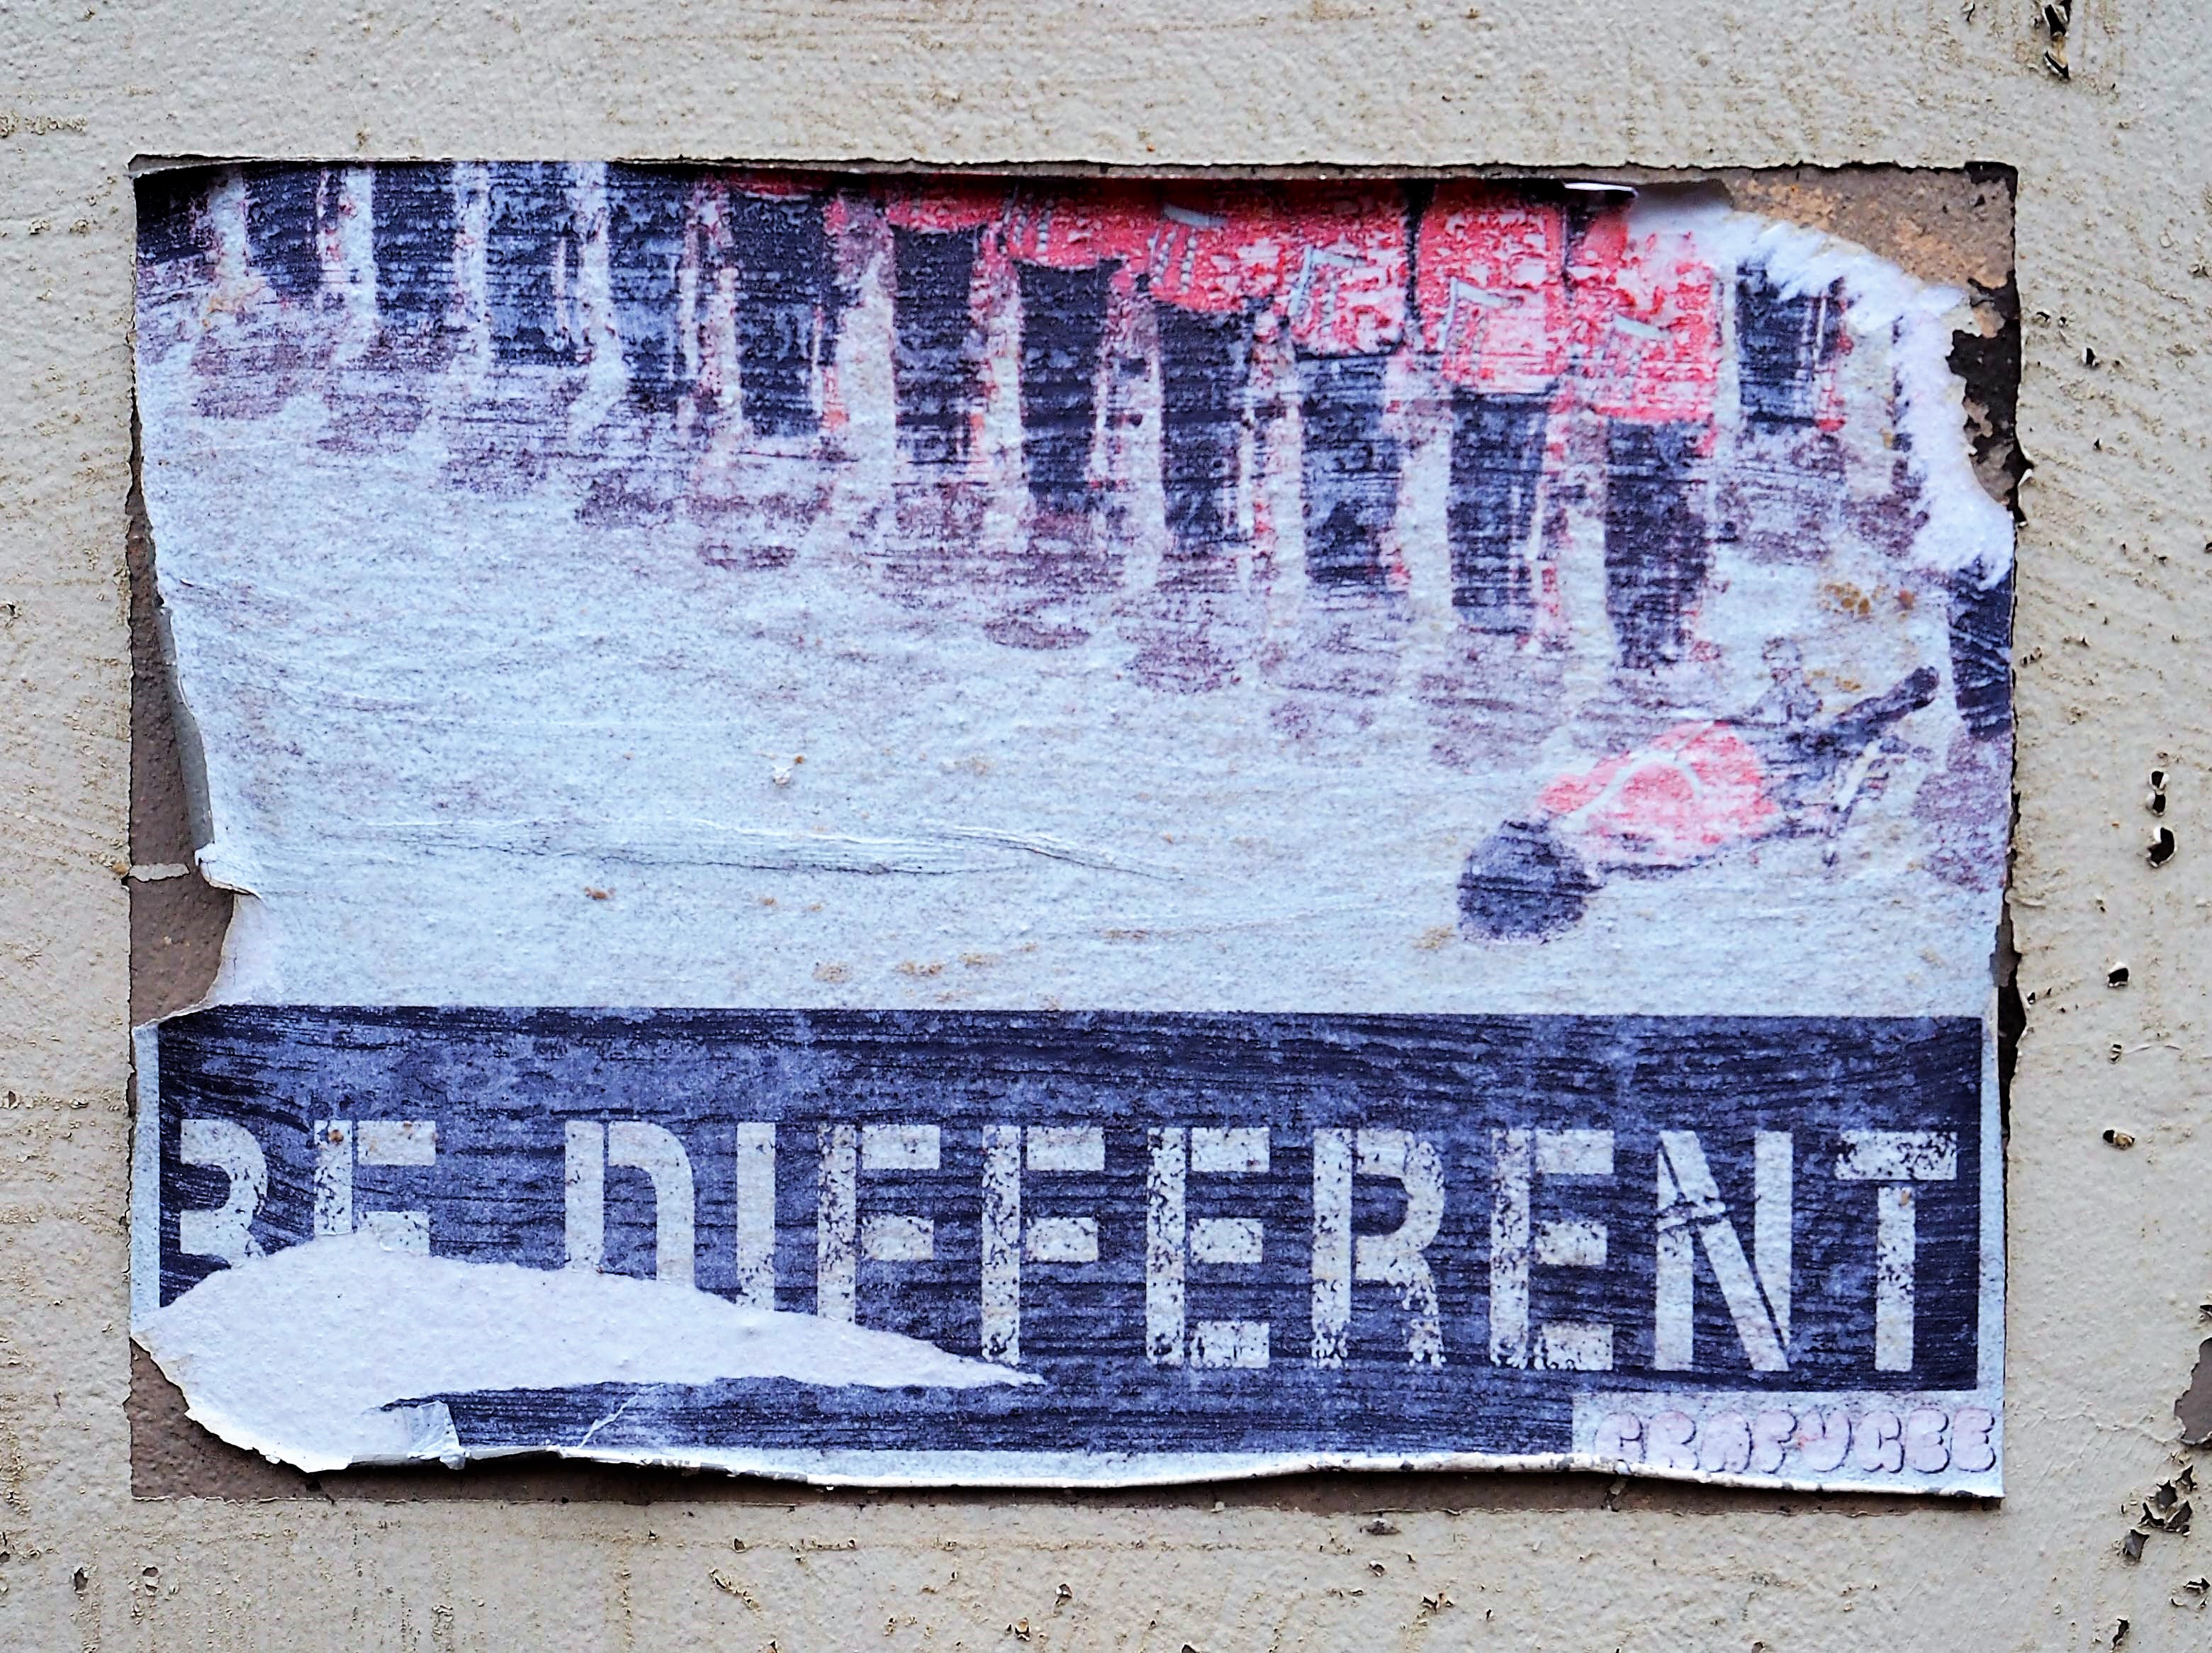 ein Plakat von Grafugee das sagt "Be different" und eine Reihe von Soldaten zeigt von denen einer liegt